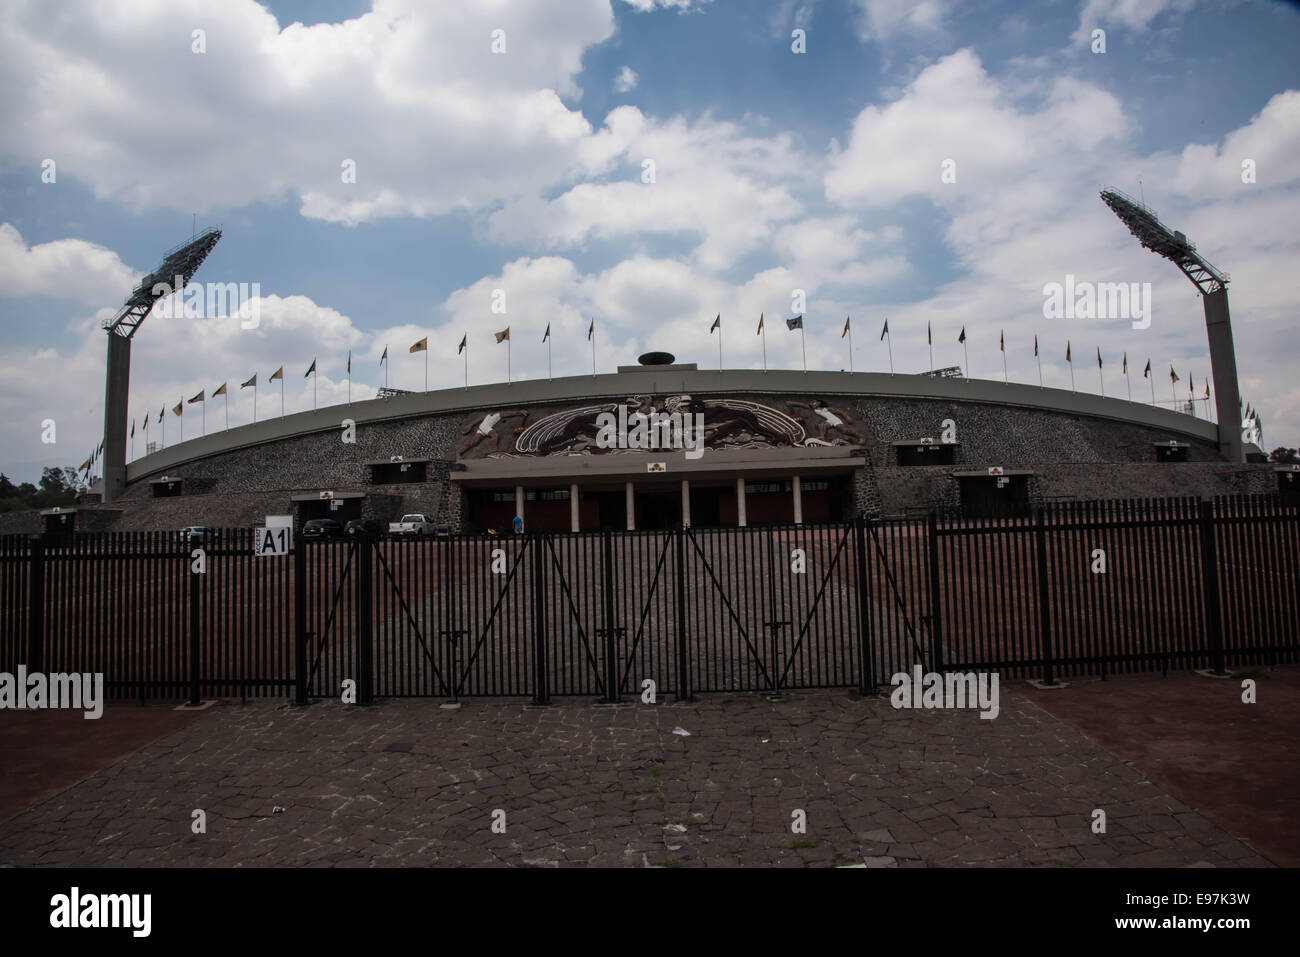 University Olympic Stadium,Mexico city,Mexico Stock Photo